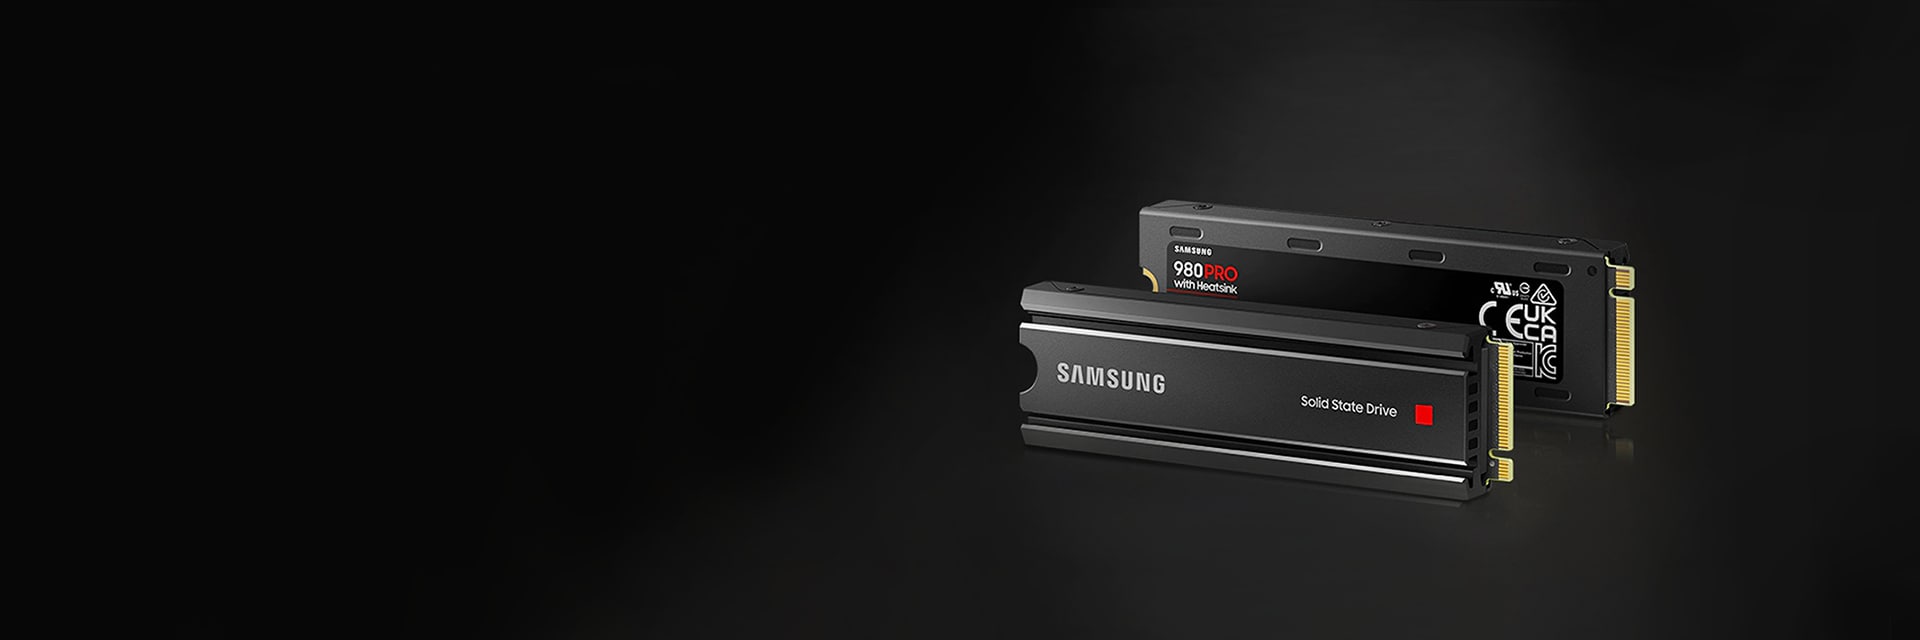 Samsung 980 PRO ヒートシンクモデル 1TB SSDSamsung